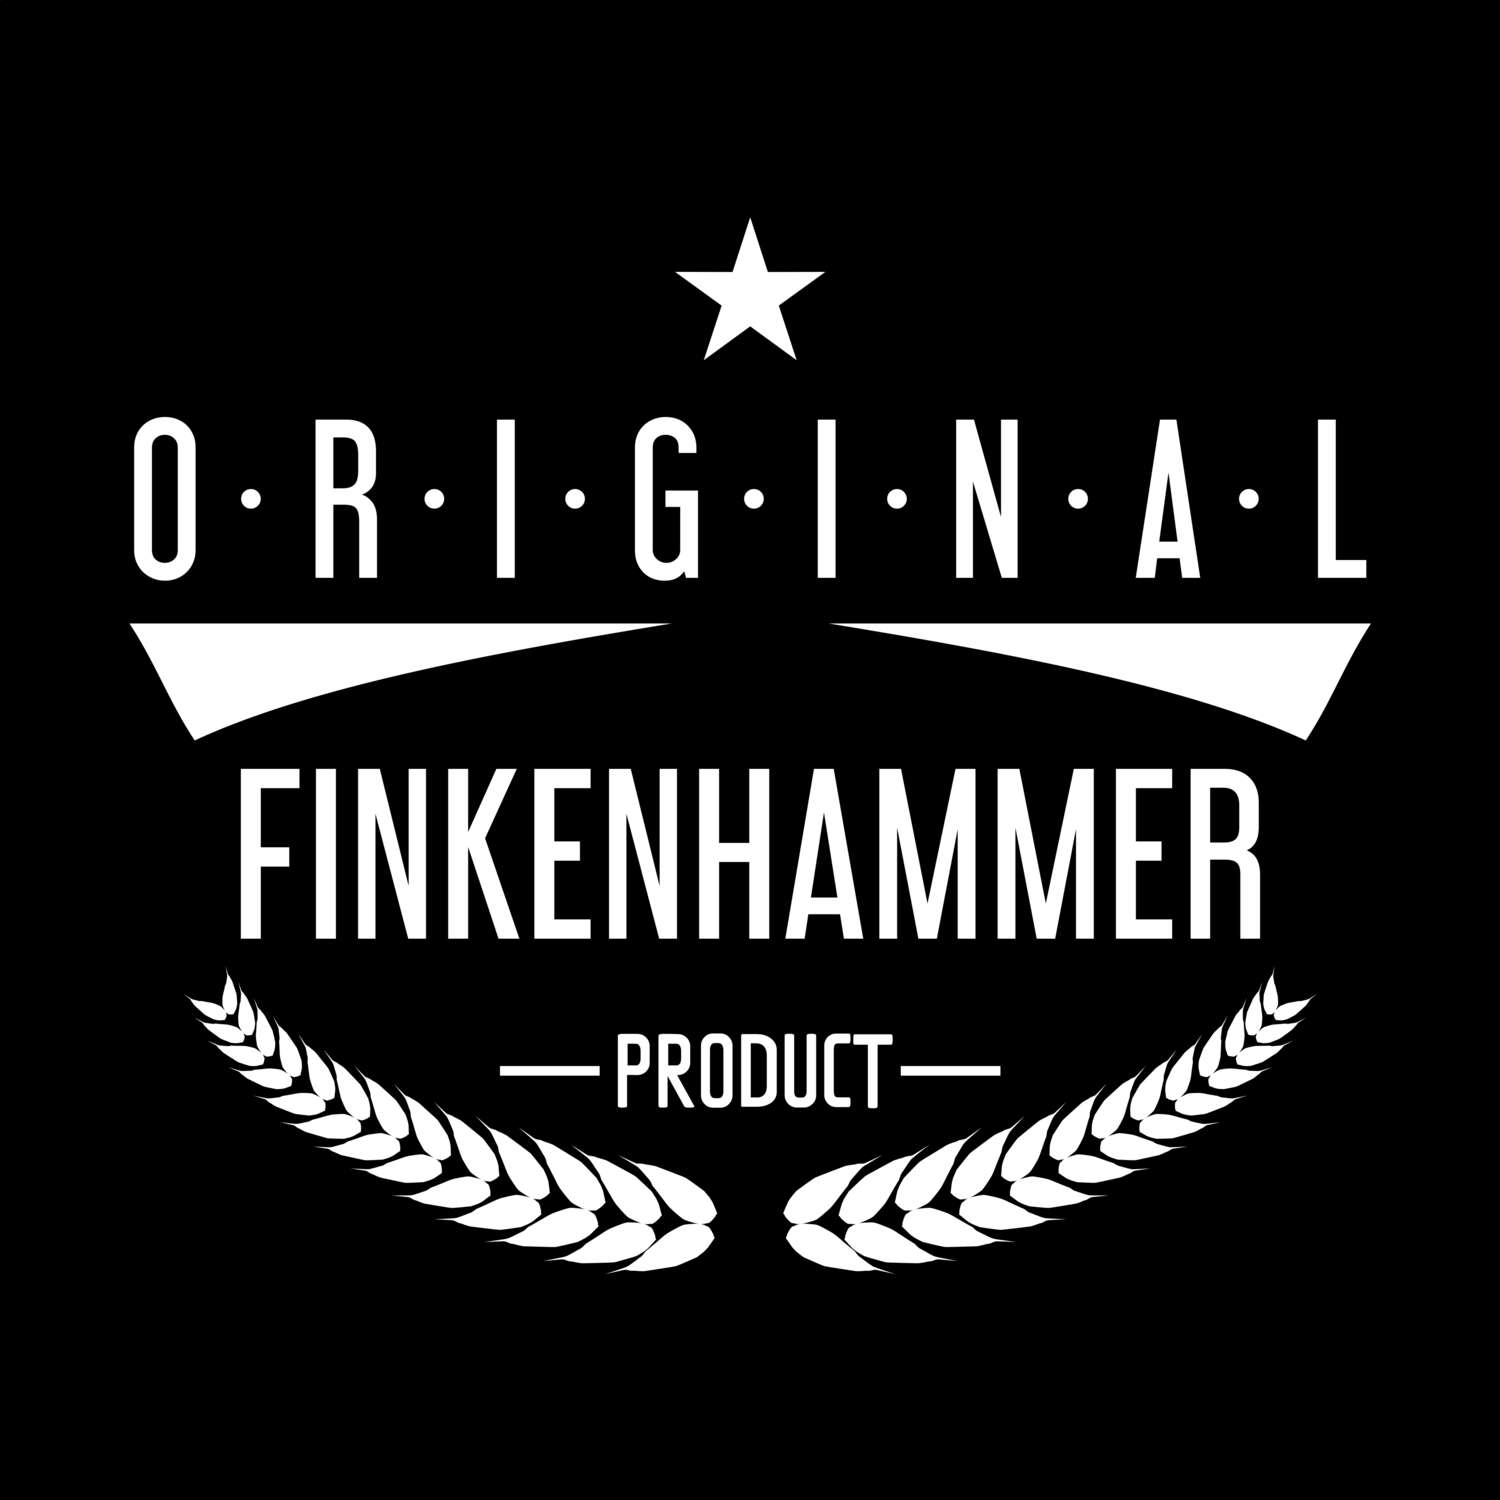 Finkenhammer T-Shirt »Original Product«